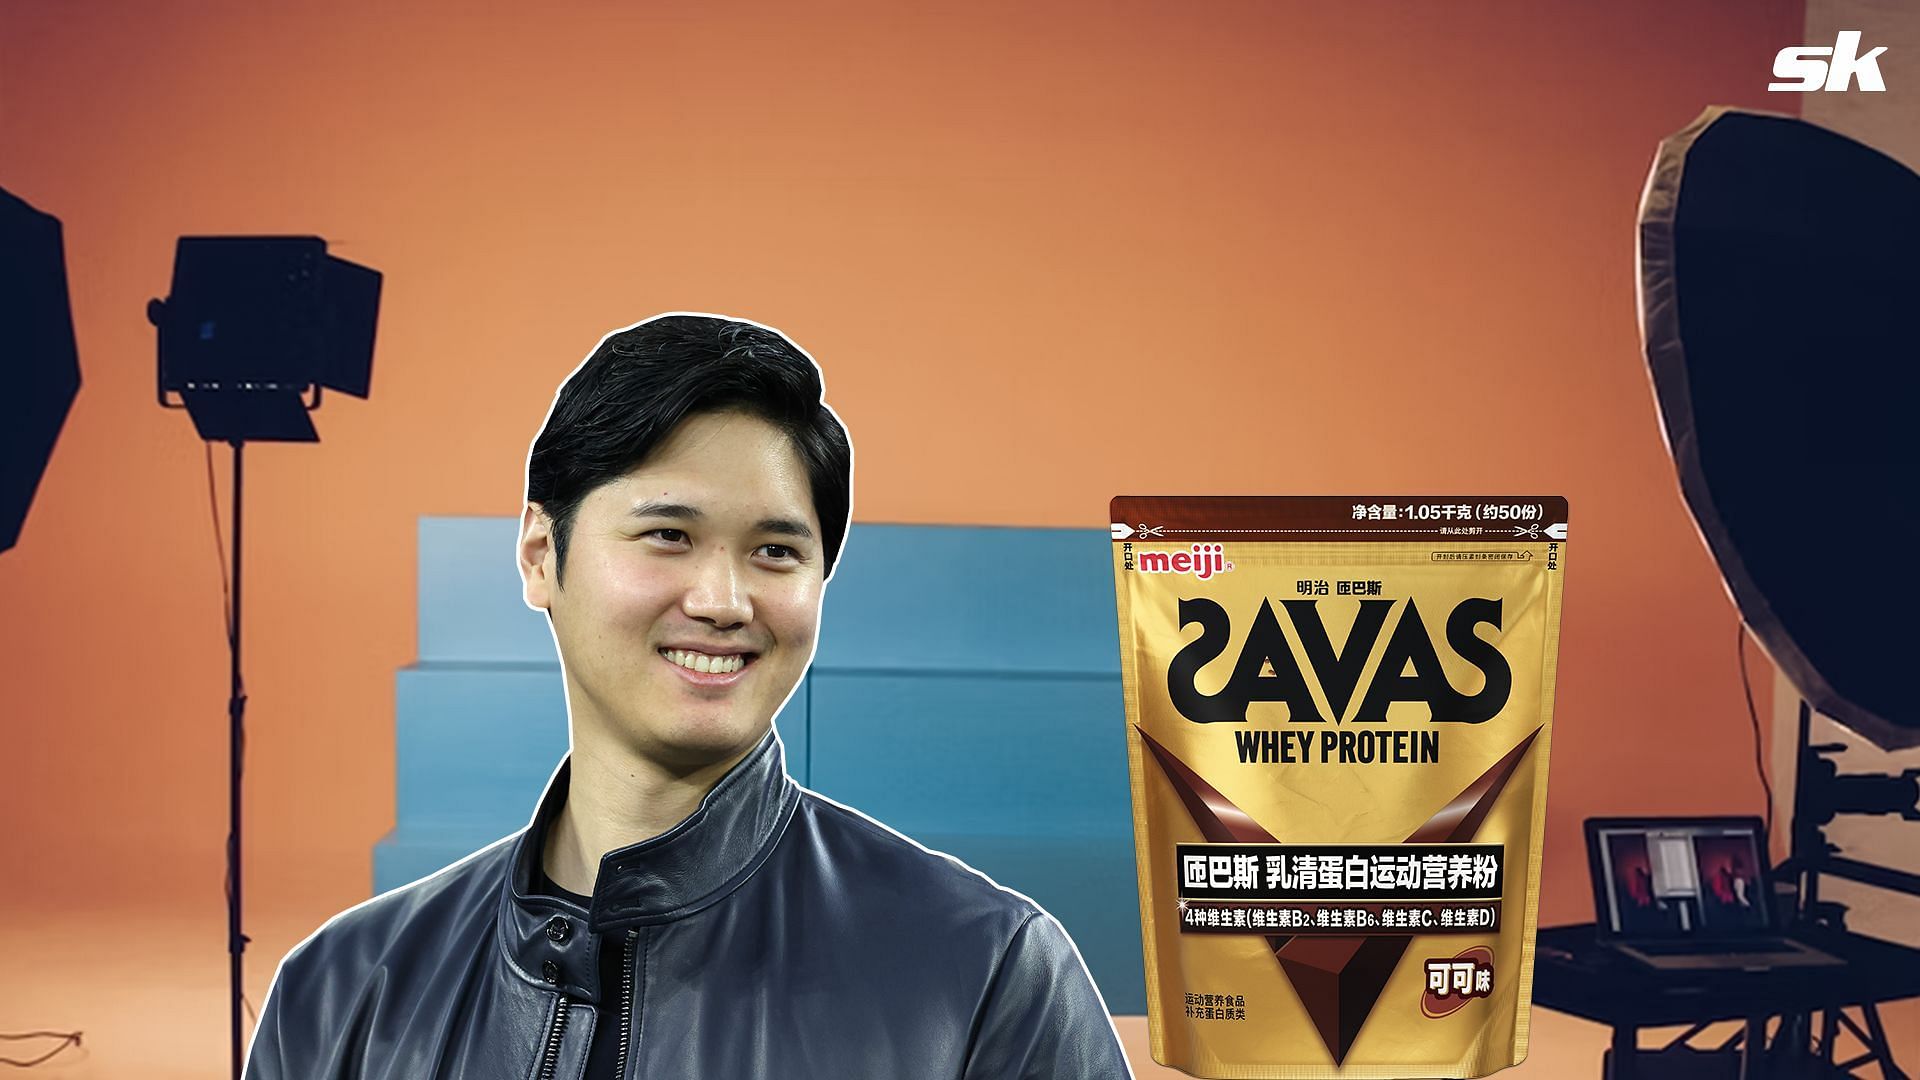 Shohei Ohtani enjoying at the ad shoot of Savas whey protein 